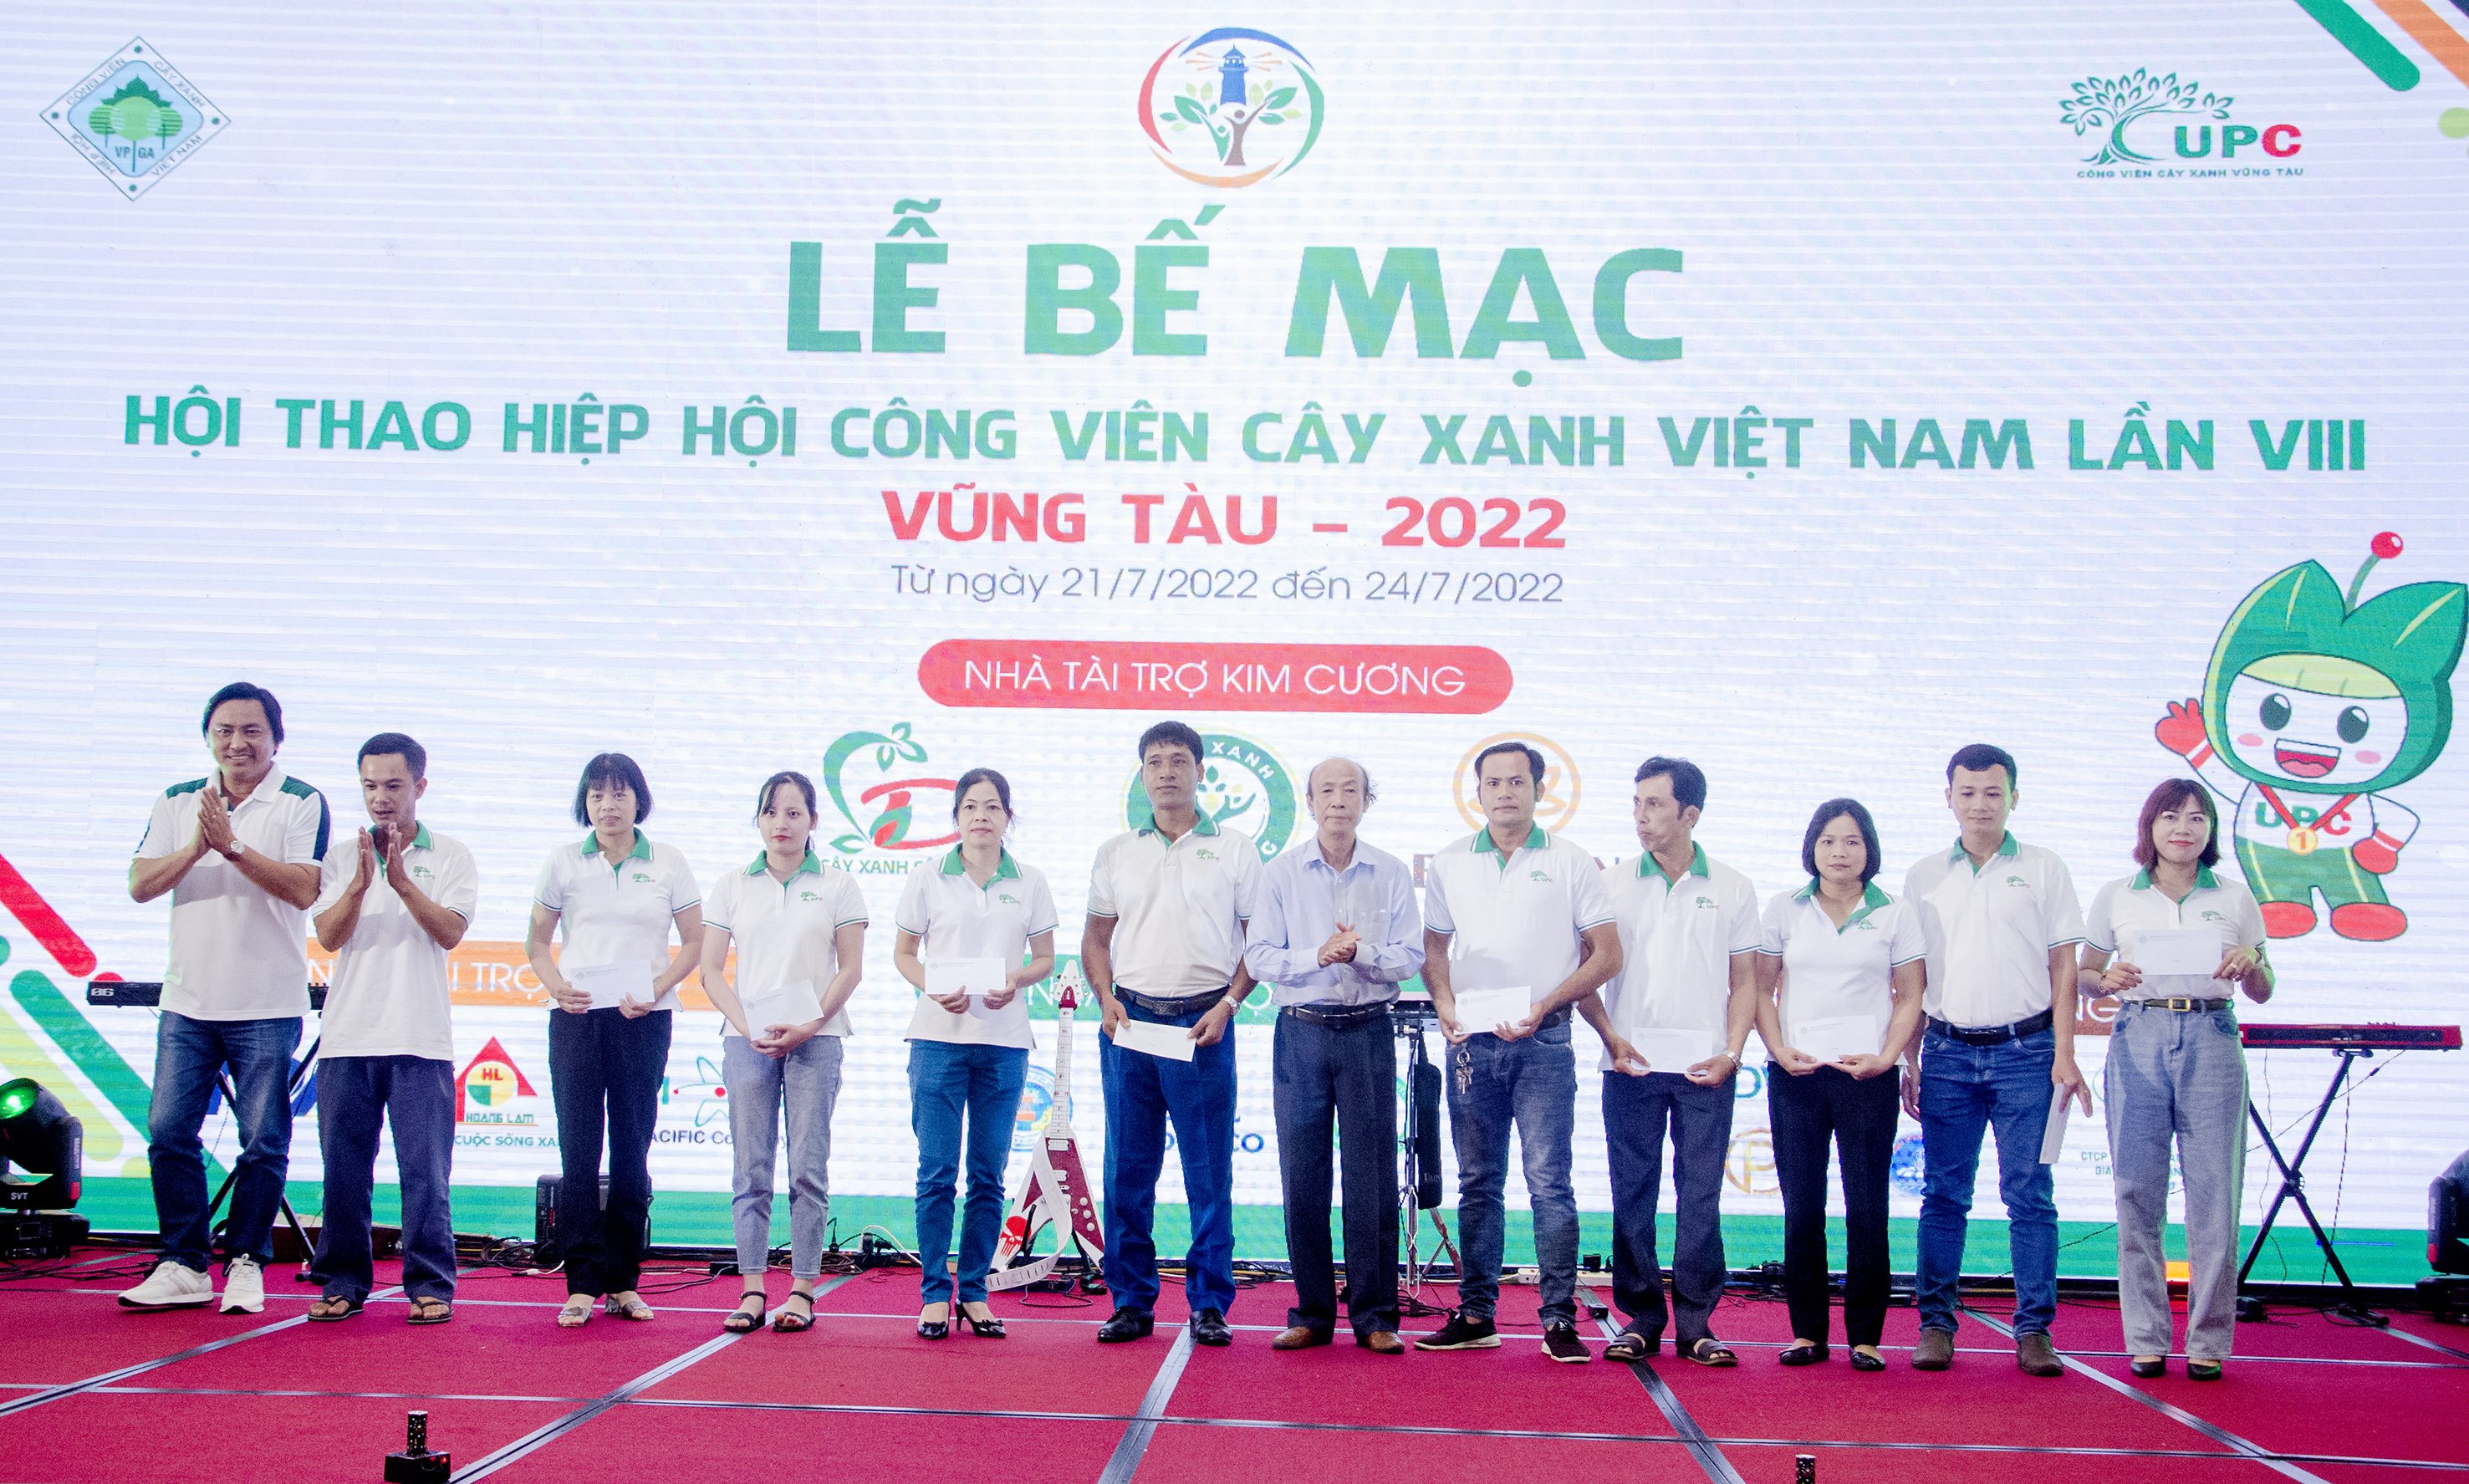 Ban Tổ chức trao quà cho các gia đình chính sách, người lao động có hoàn cảnh khó khăn là hội viên Hiệp hội Công viên Cây xanh Việt Nam.